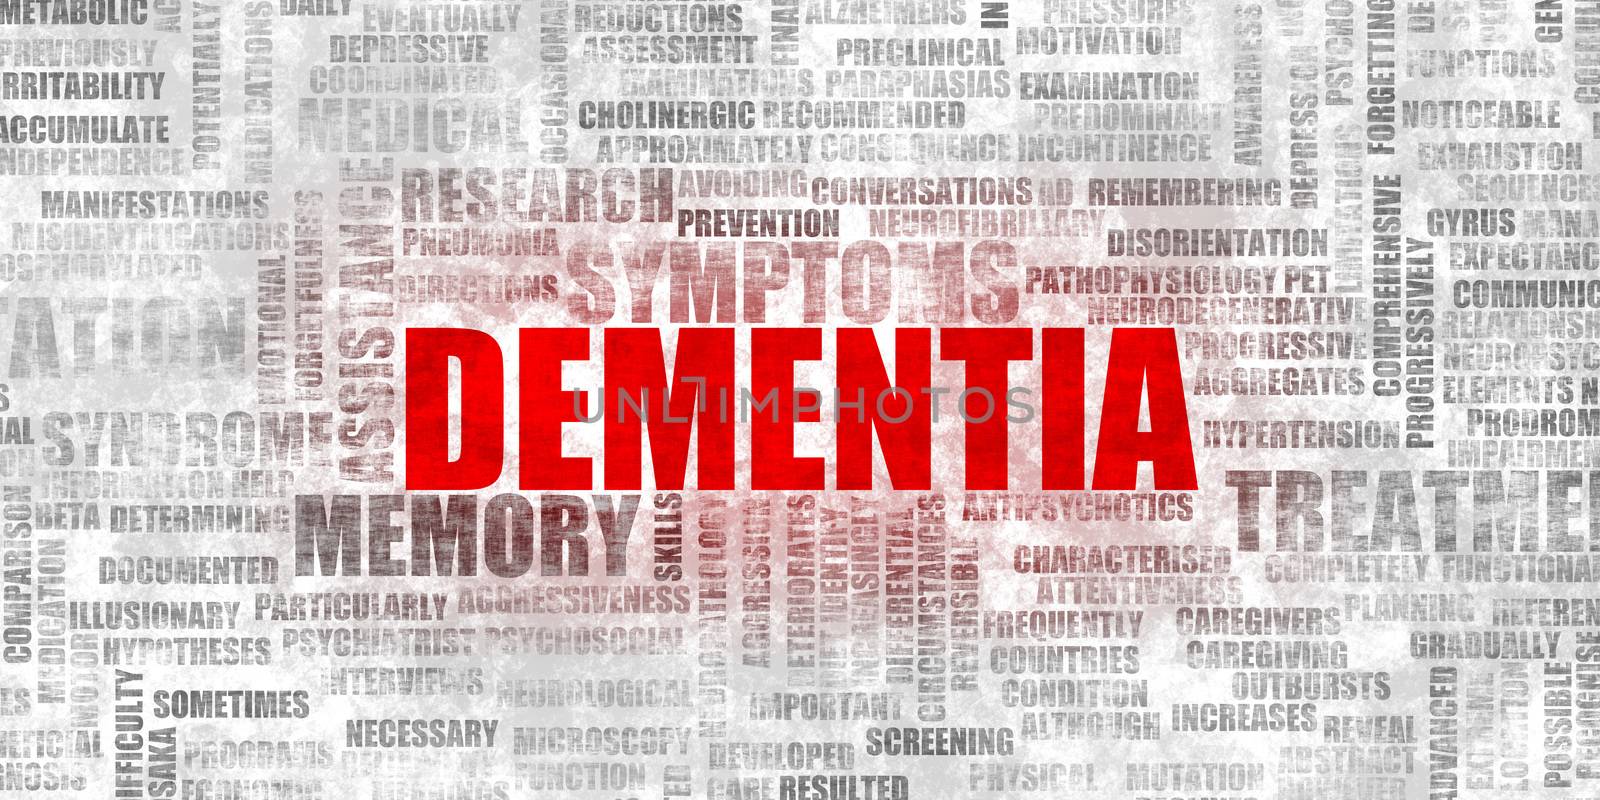 Dementia Symptoms as a Mental Degeneration Concept